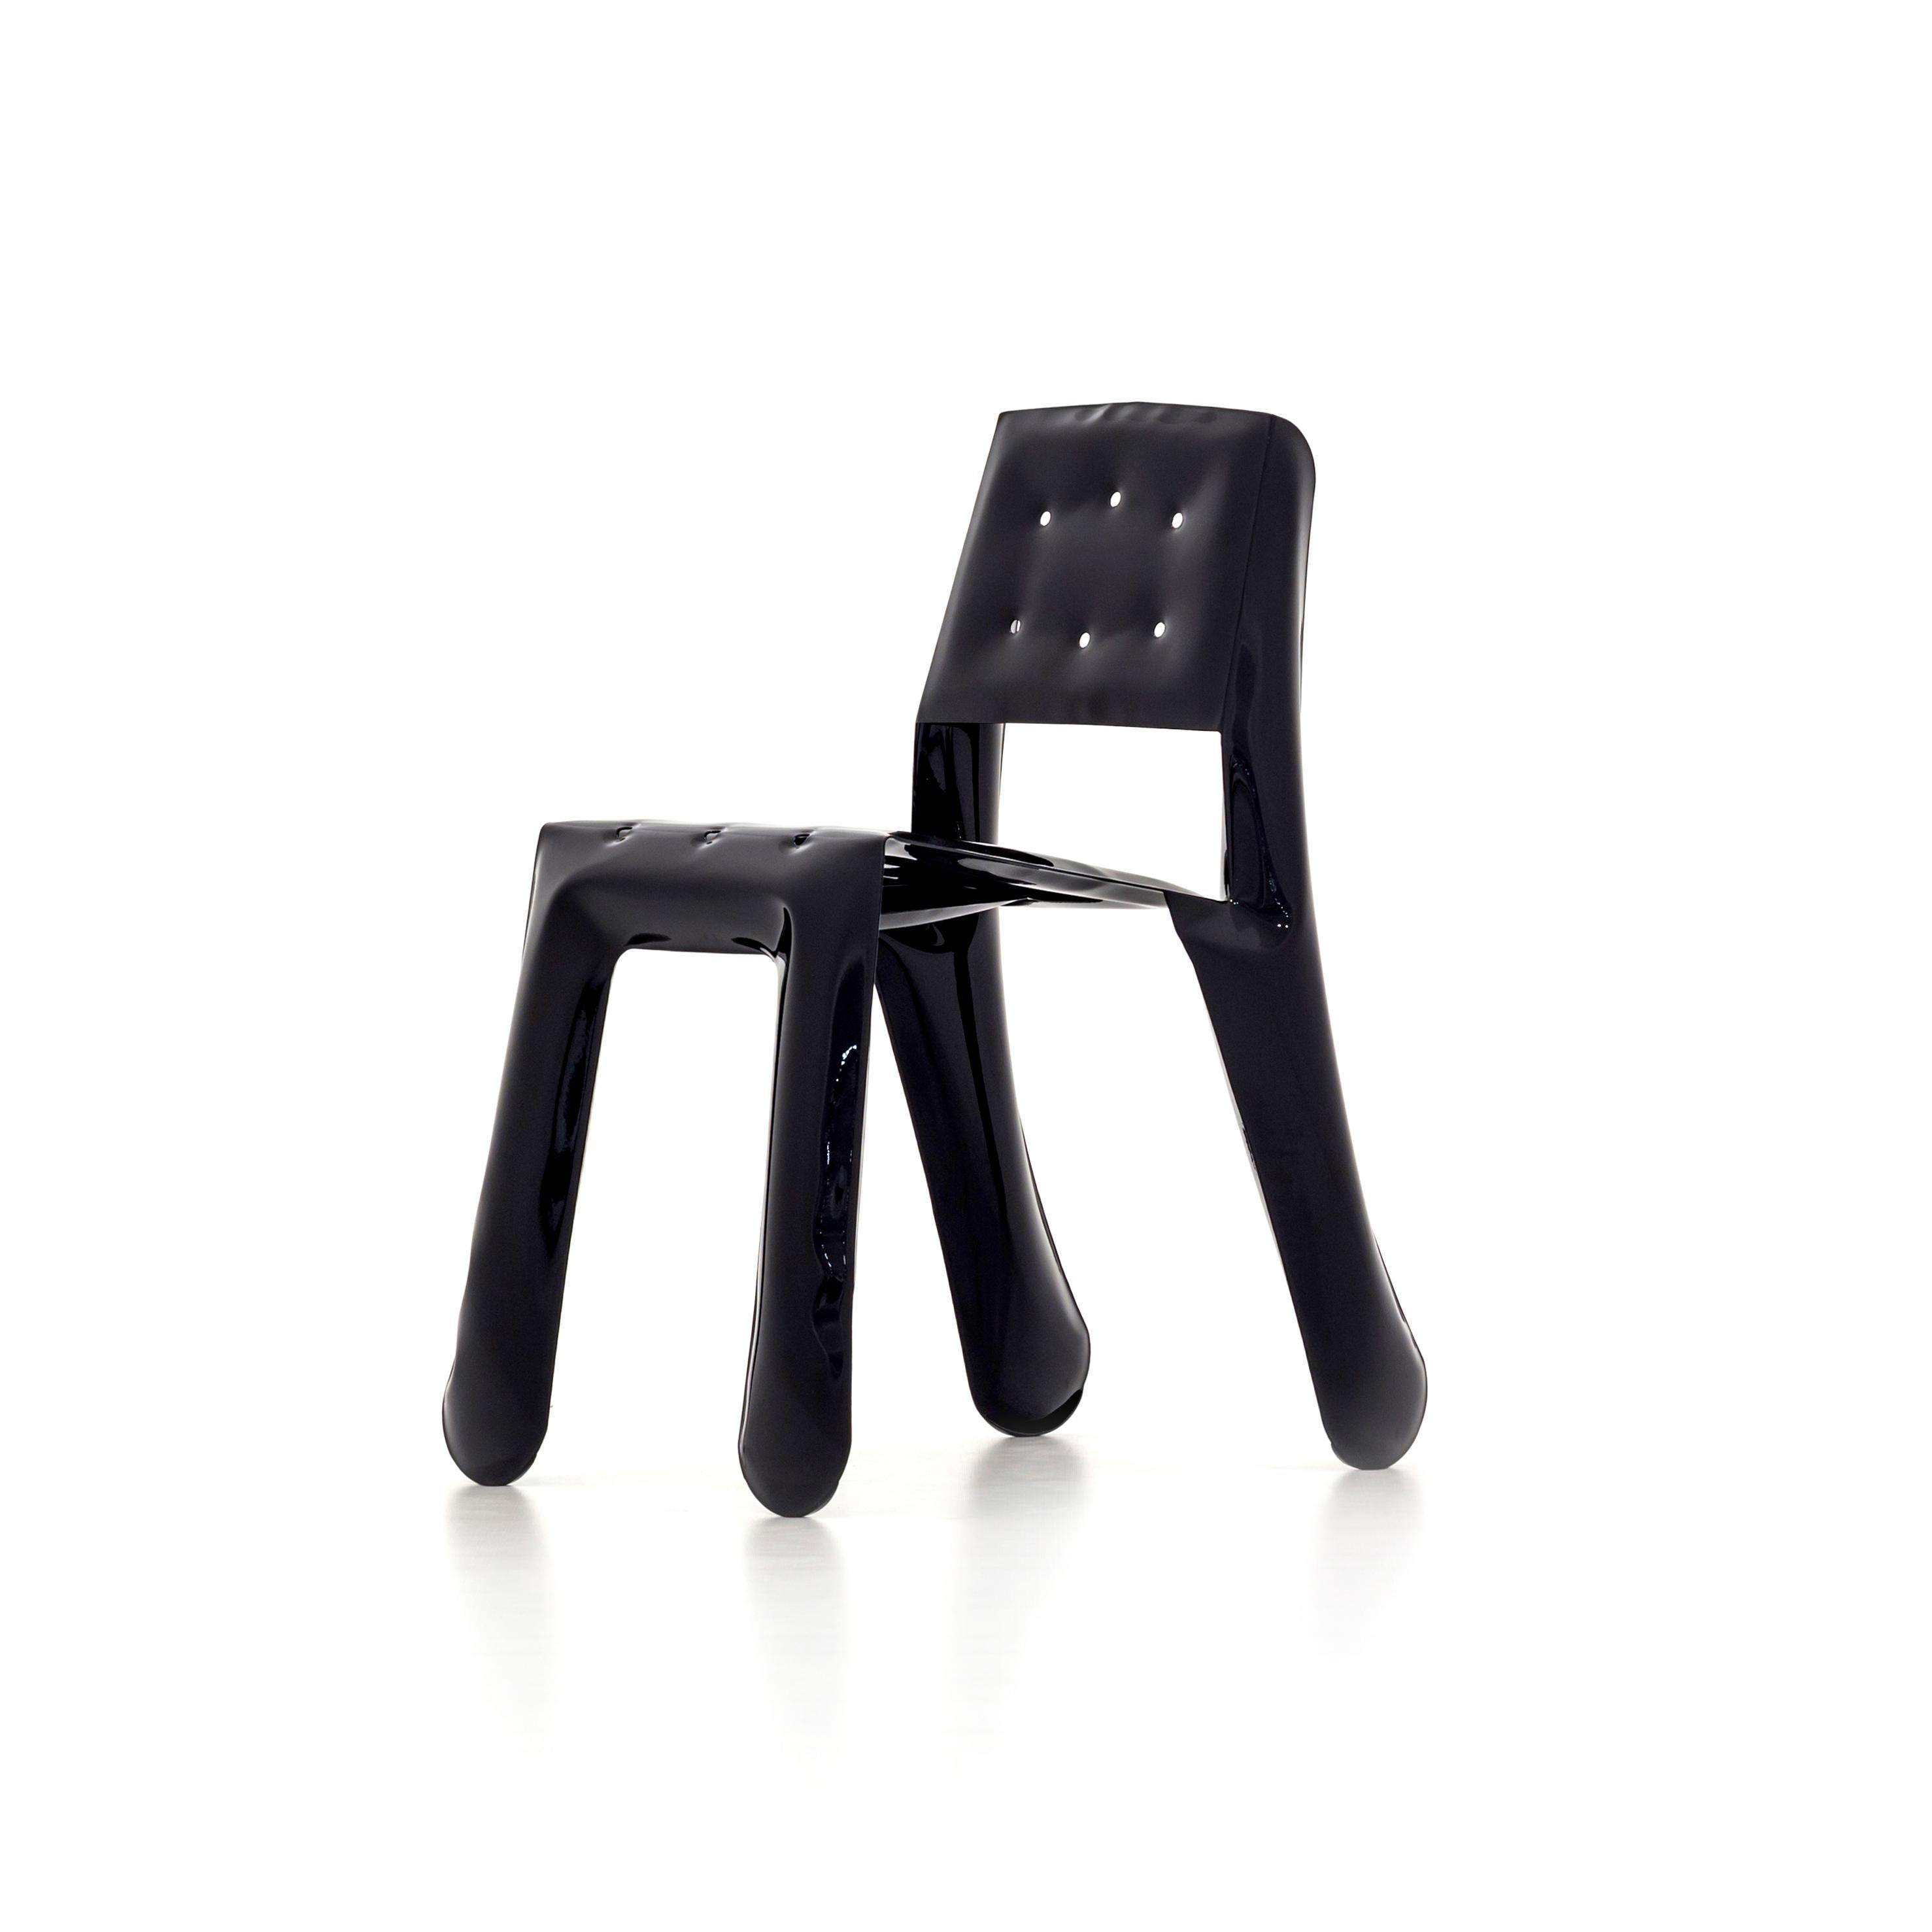 Chippensteel 0.5 Skulpturaler Stuhl aus schwarzem Kohlenstoffstahl von Zieta
Abmessungen: T 58 x B 46 x H 80 cm 
MATERIAL: Kohlenstoffstahl. 
Ausführung: Pulverbeschichtet. Glänzende Oberfläche. 
Auch in folgenden Farben erhältlich: Weiß matt,